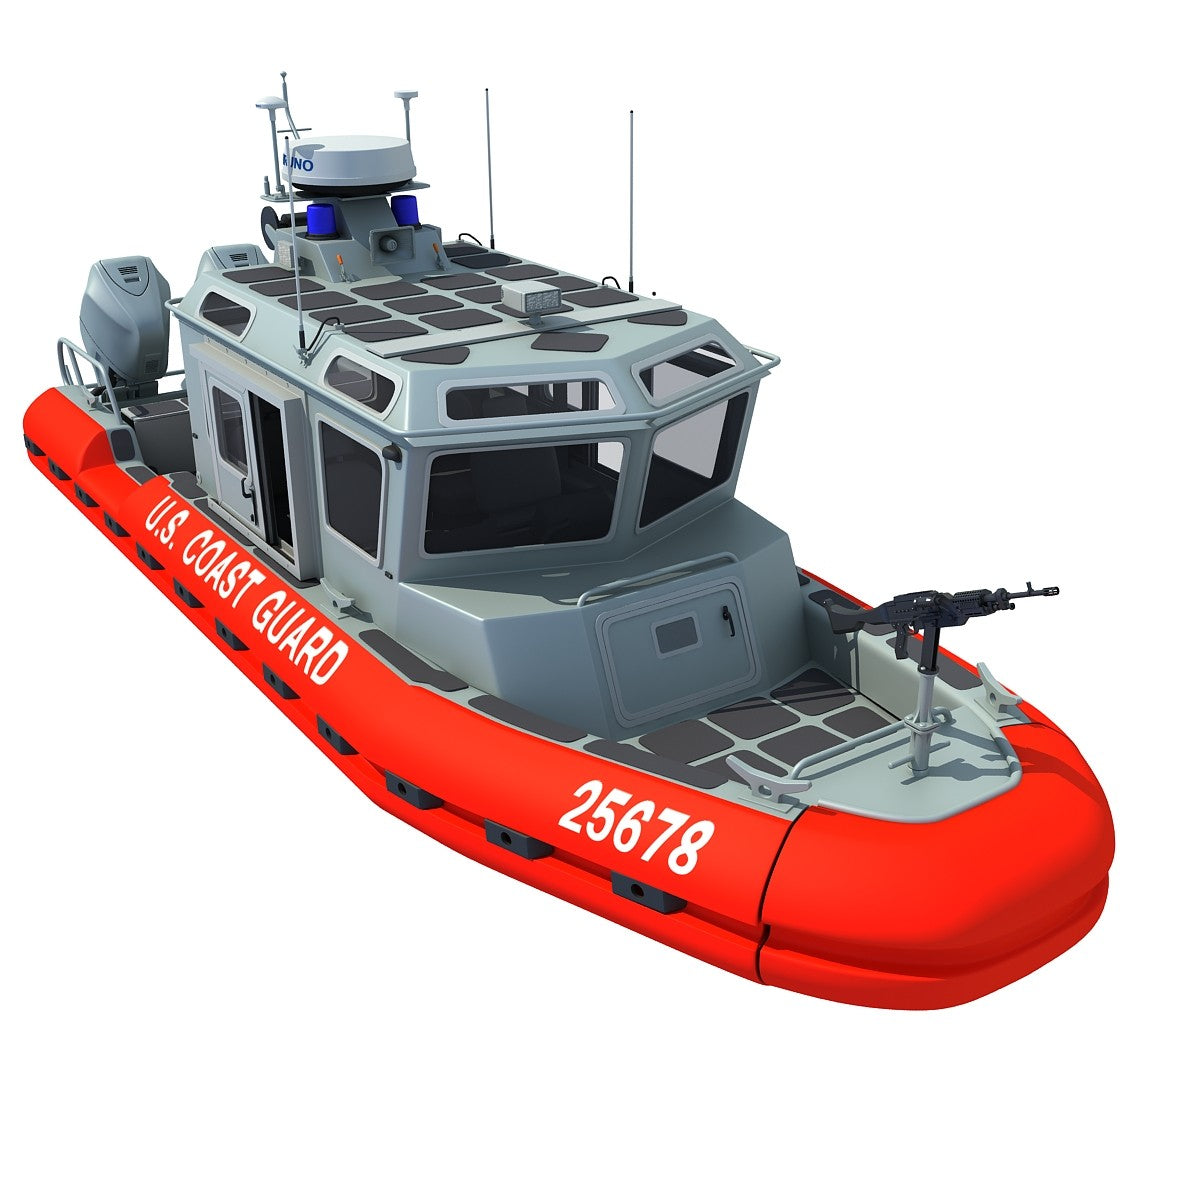 Coast Guard Defender Boat 3D Model